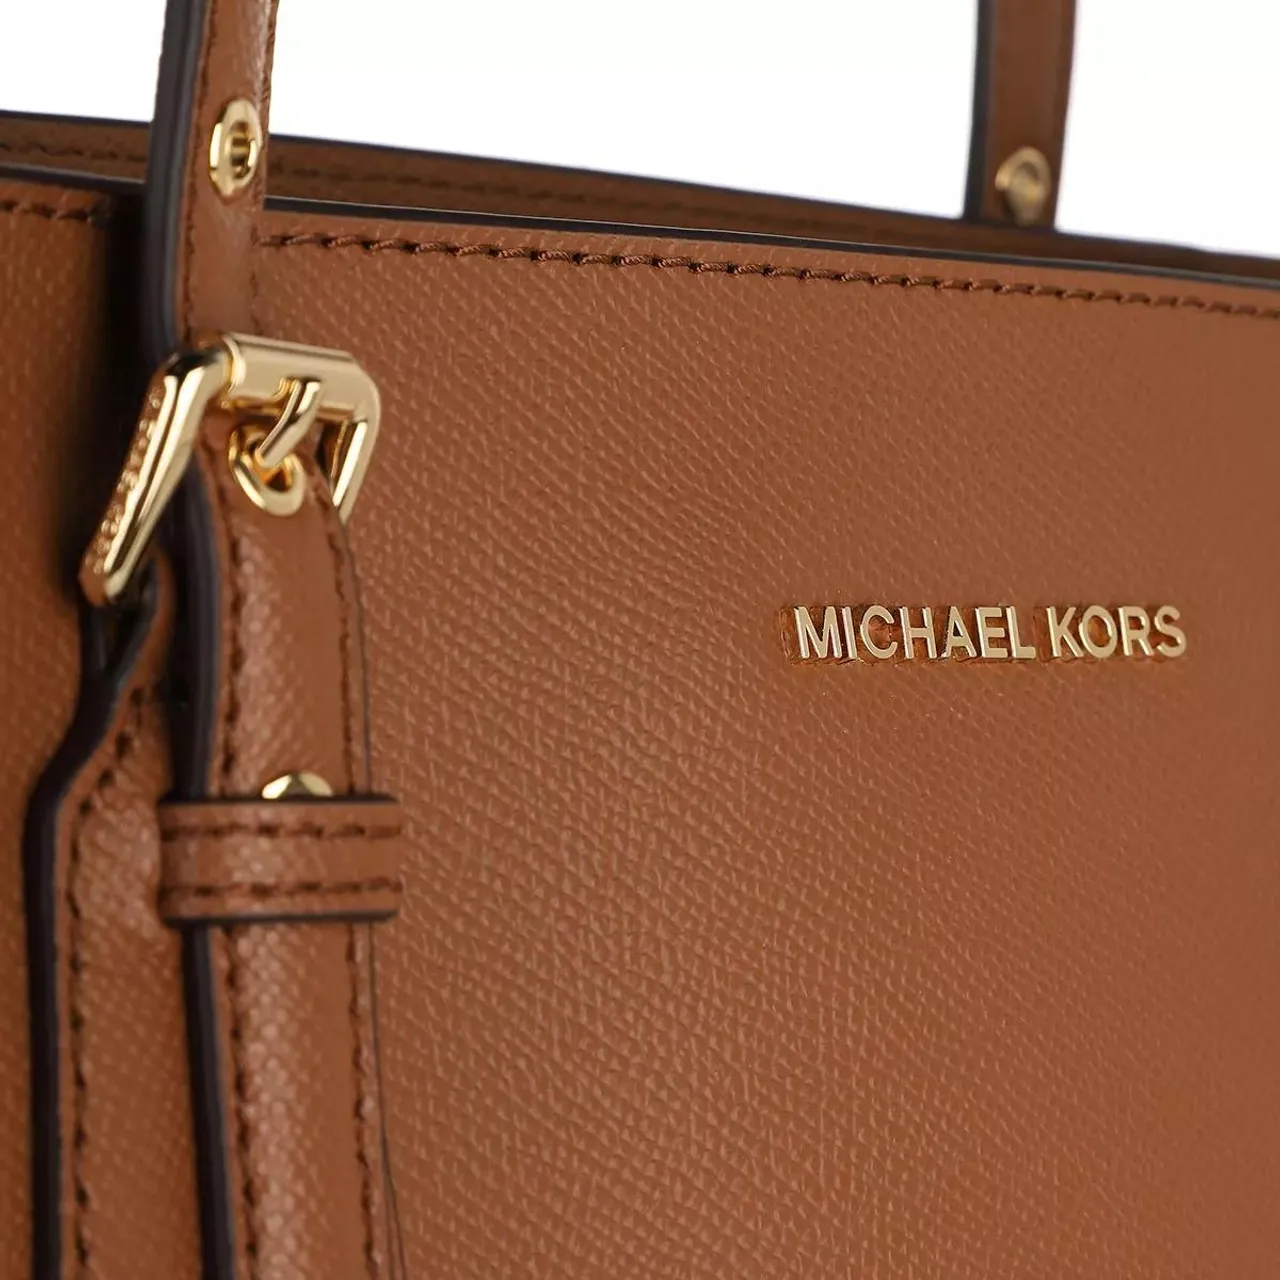 Michael Kors Tote Bags - Tote - cognac - Tote Bags for ladies